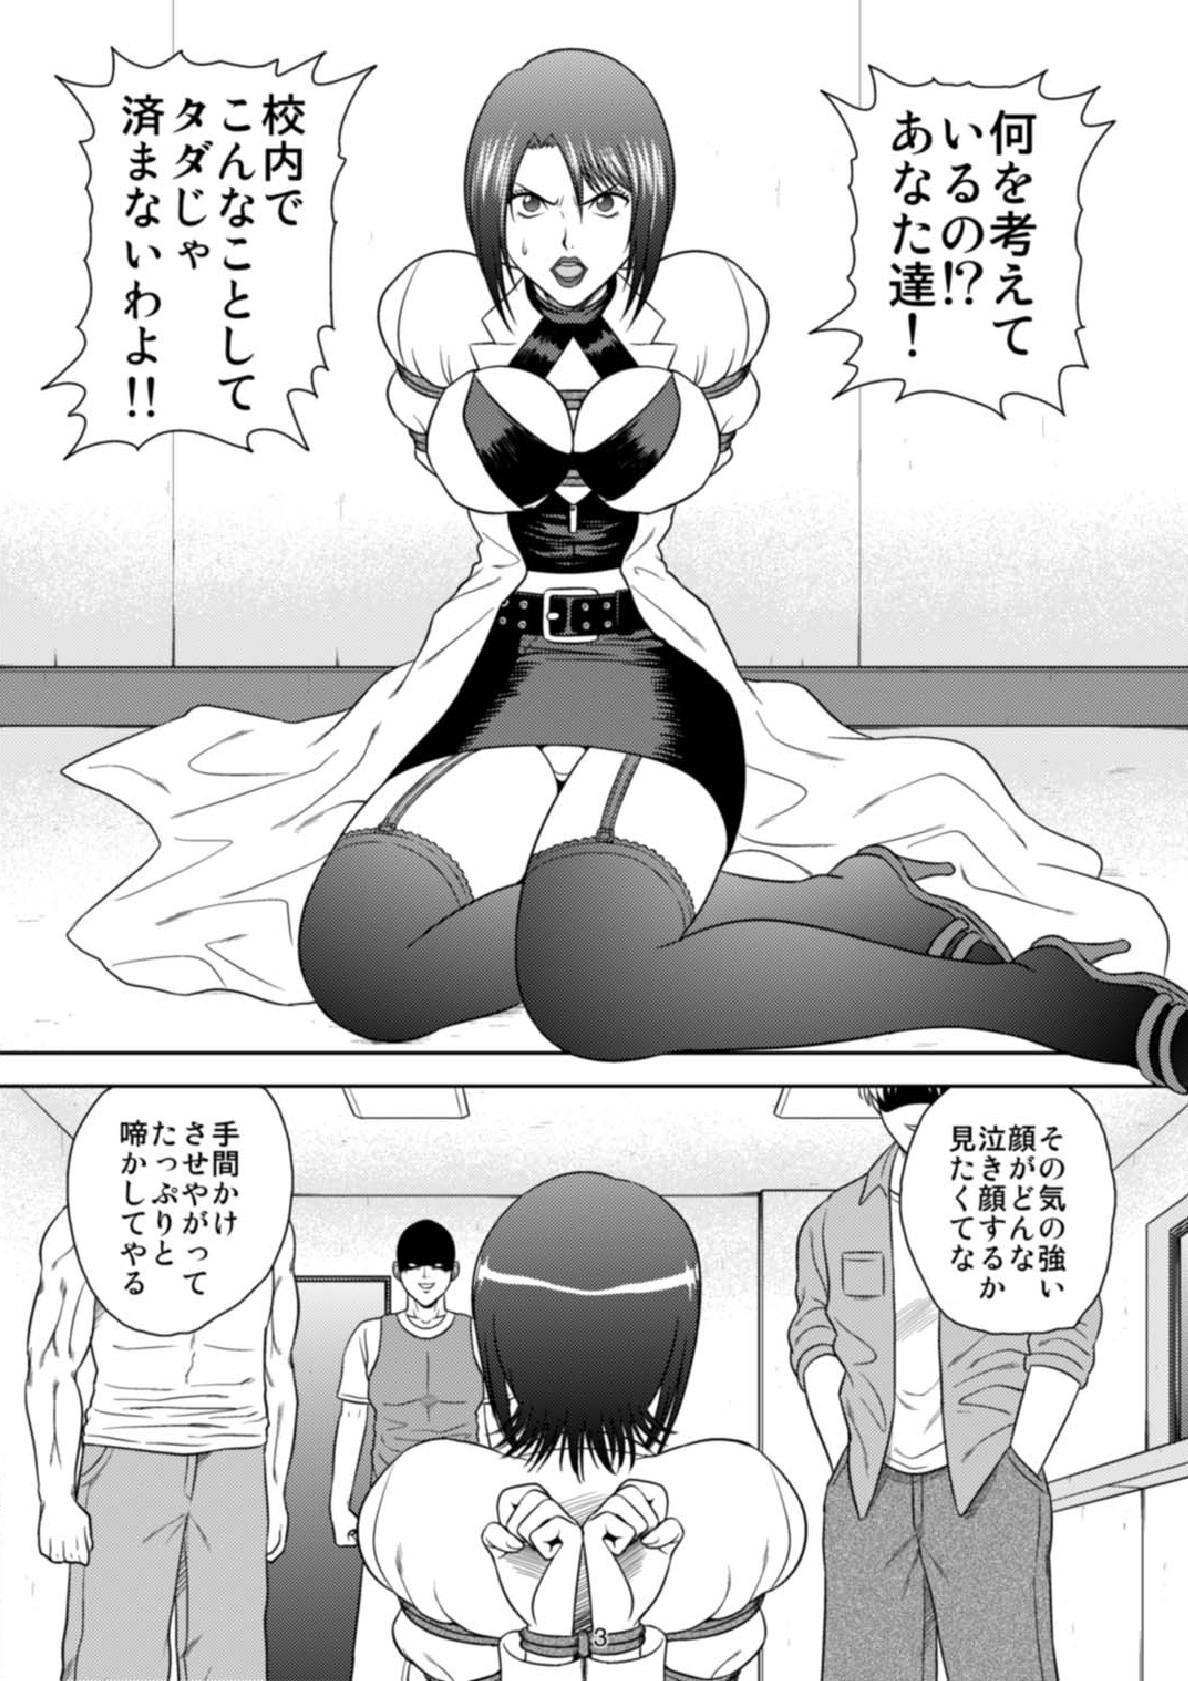 Sola Kachiku Monogatari - Moyashimon Sperm - Page 3